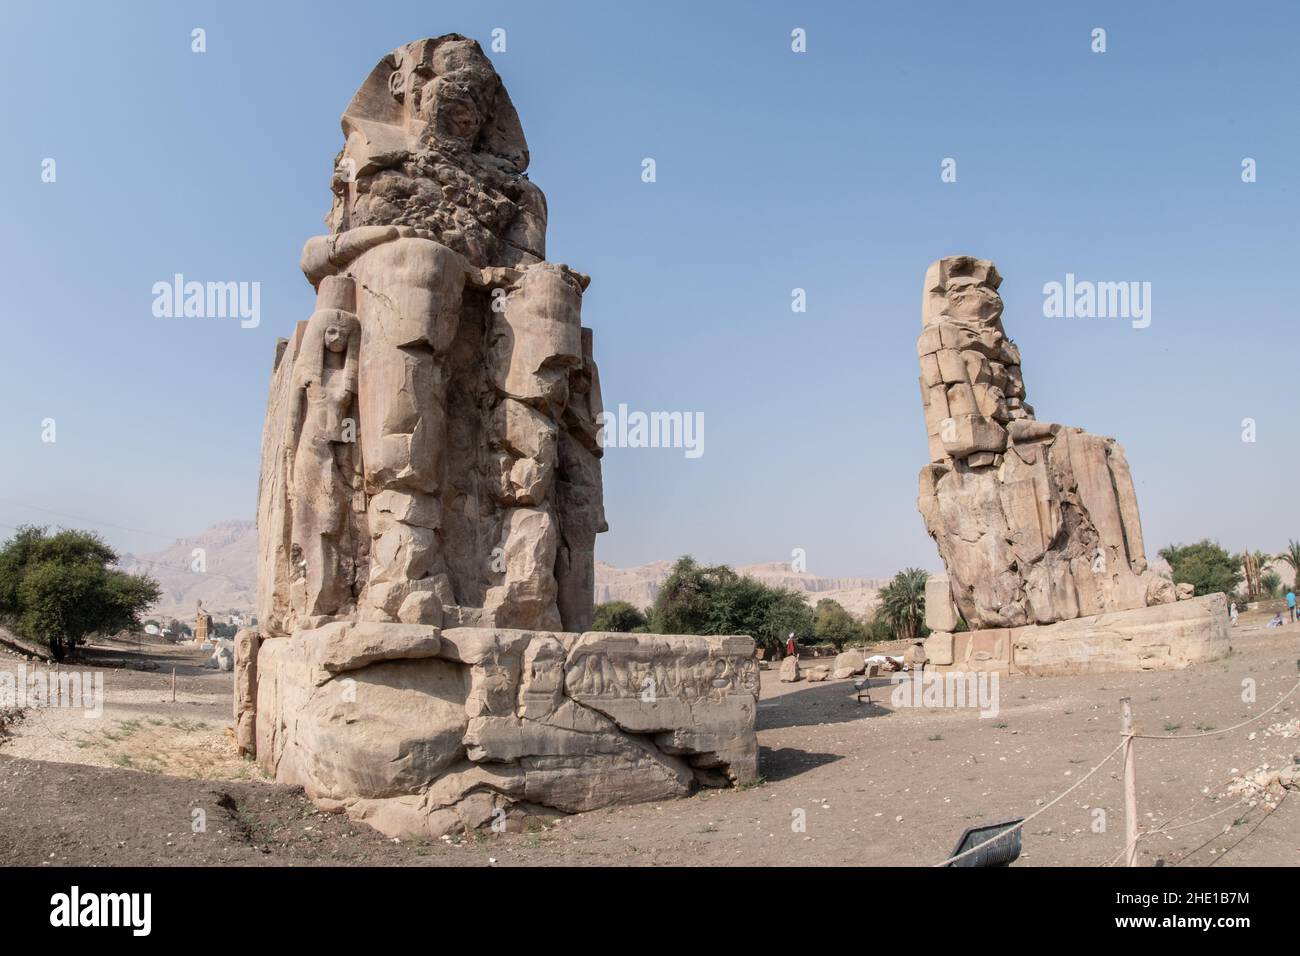 Colossi von Memnon, zwei massive Steinstatuen des Pharao Amenhotep III, ein beliebter Haltepunkt für Touristen in Ägypten. Stockfoto